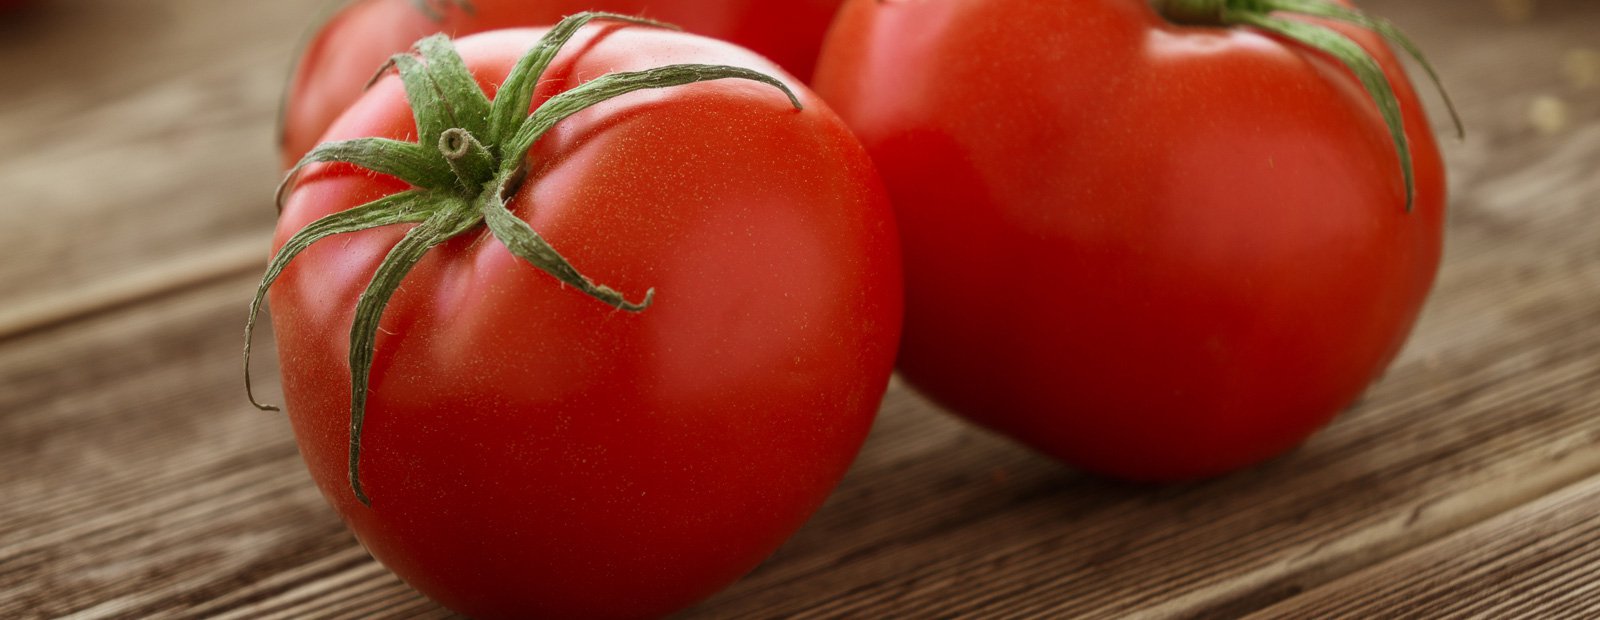 الصحة والطماطم: وصفات قليلة السعرات الحرارية